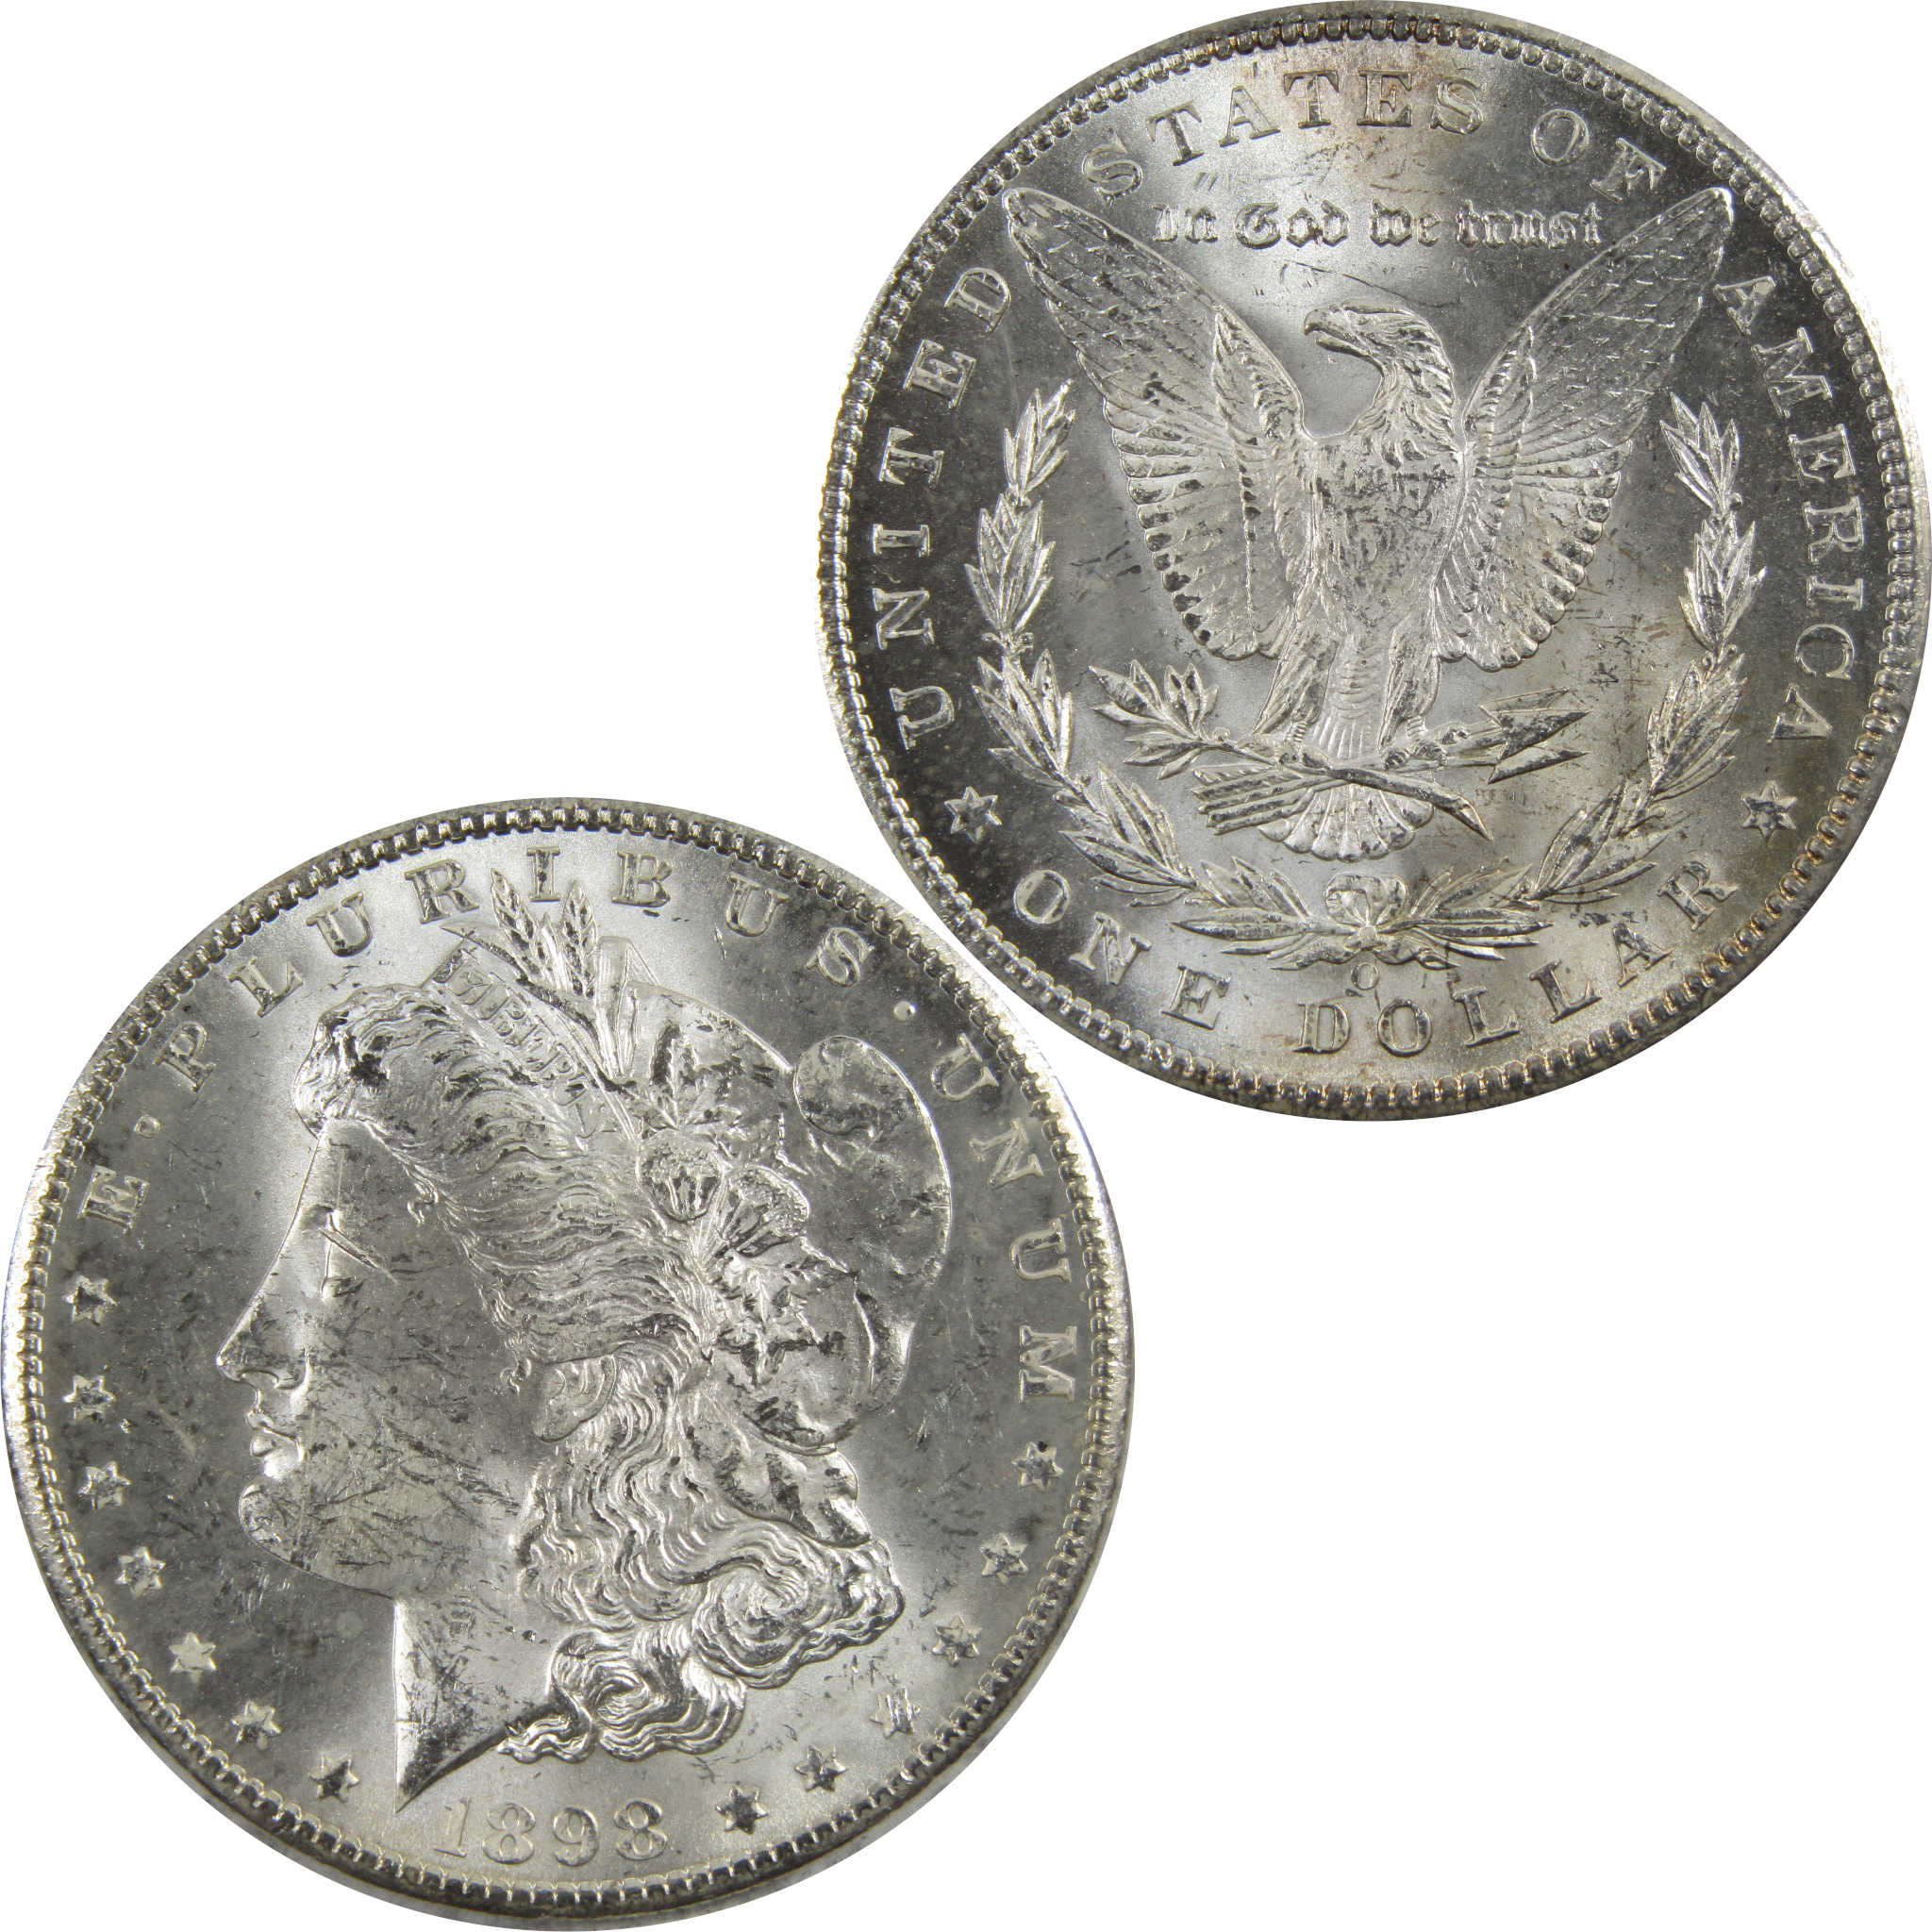 1898 O Morgan Dollar BU Uncirculated 90% Silver $1 Coin SKU:I5269 - Morgan coin - Morgan silver dollar - Morgan silver dollar for sale - Profile Coins &amp; Collectibles